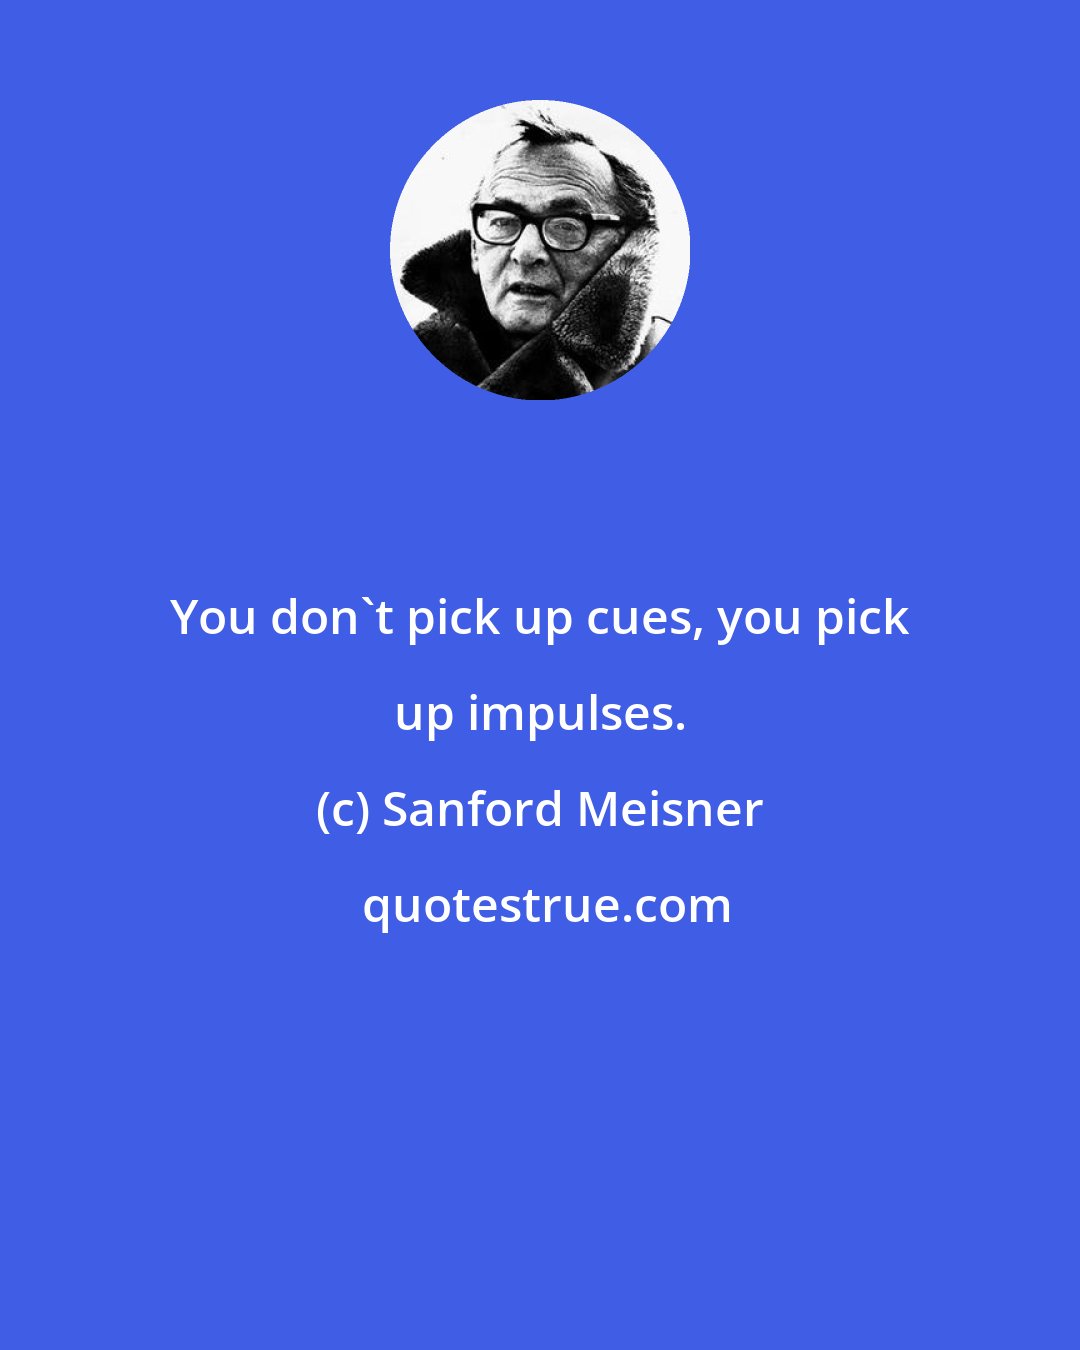 Sanford Meisner: You don't pick up cues, you pick up impulses.